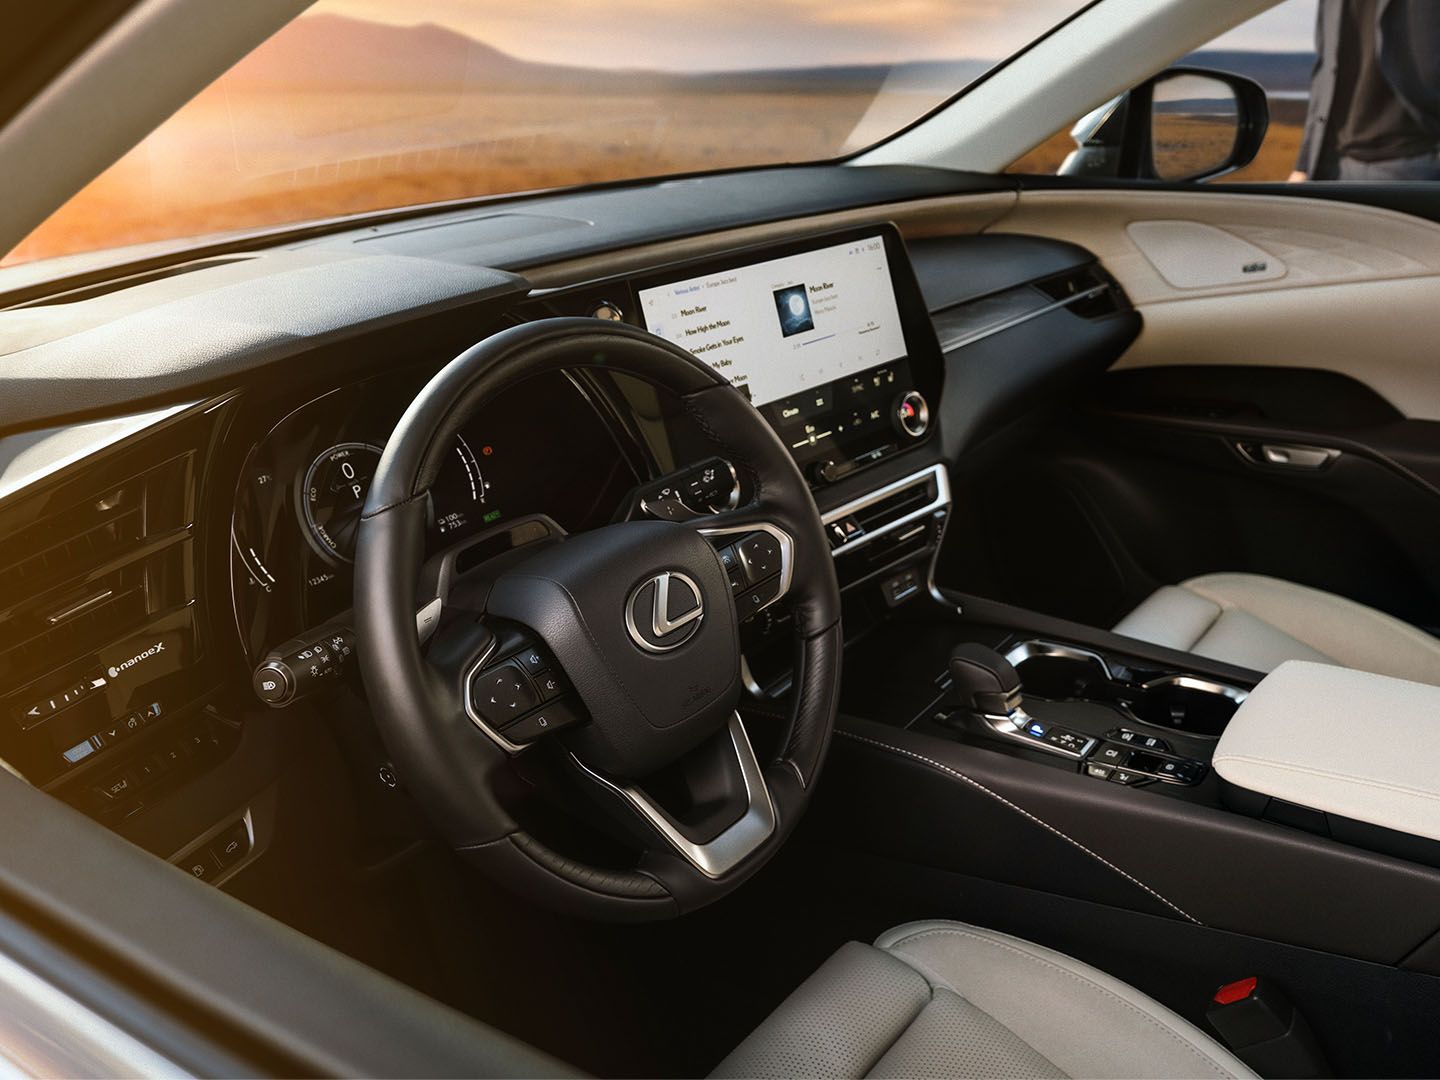 The Lexus RX interior